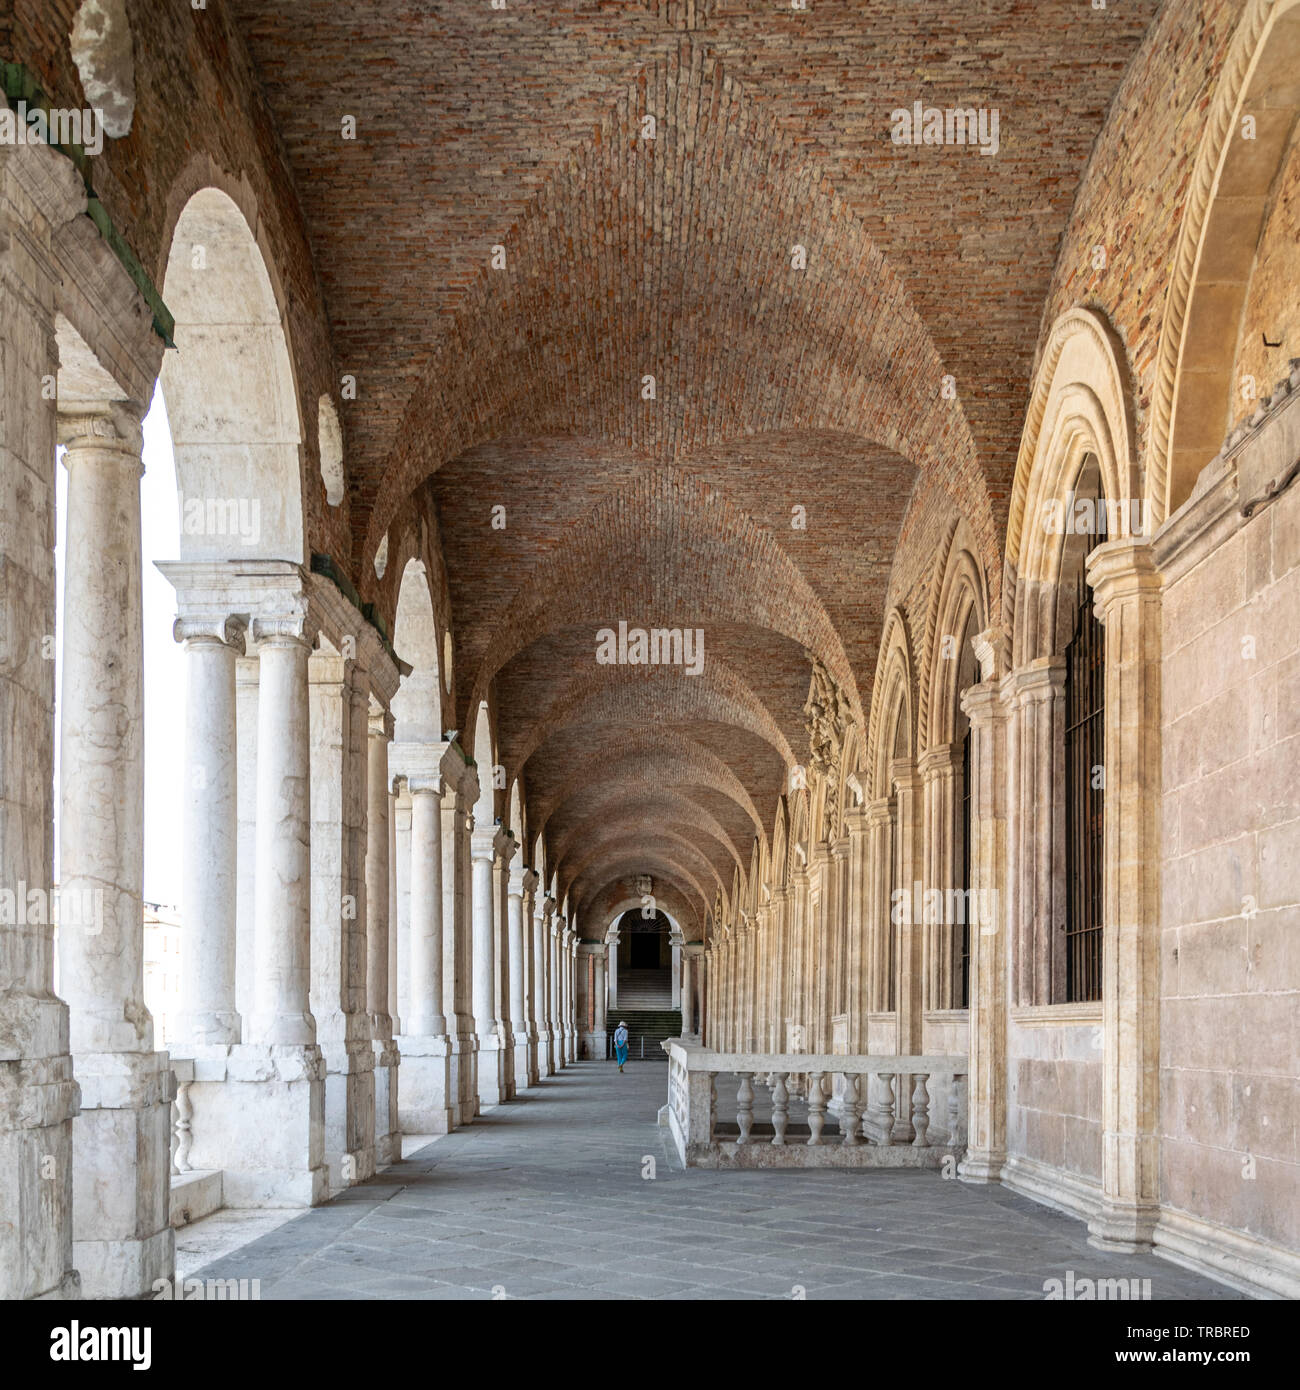 Vue de l'intérieur de la loge supérieure de la Basilique palladienne, Vicenza, Italie Banque D'Images